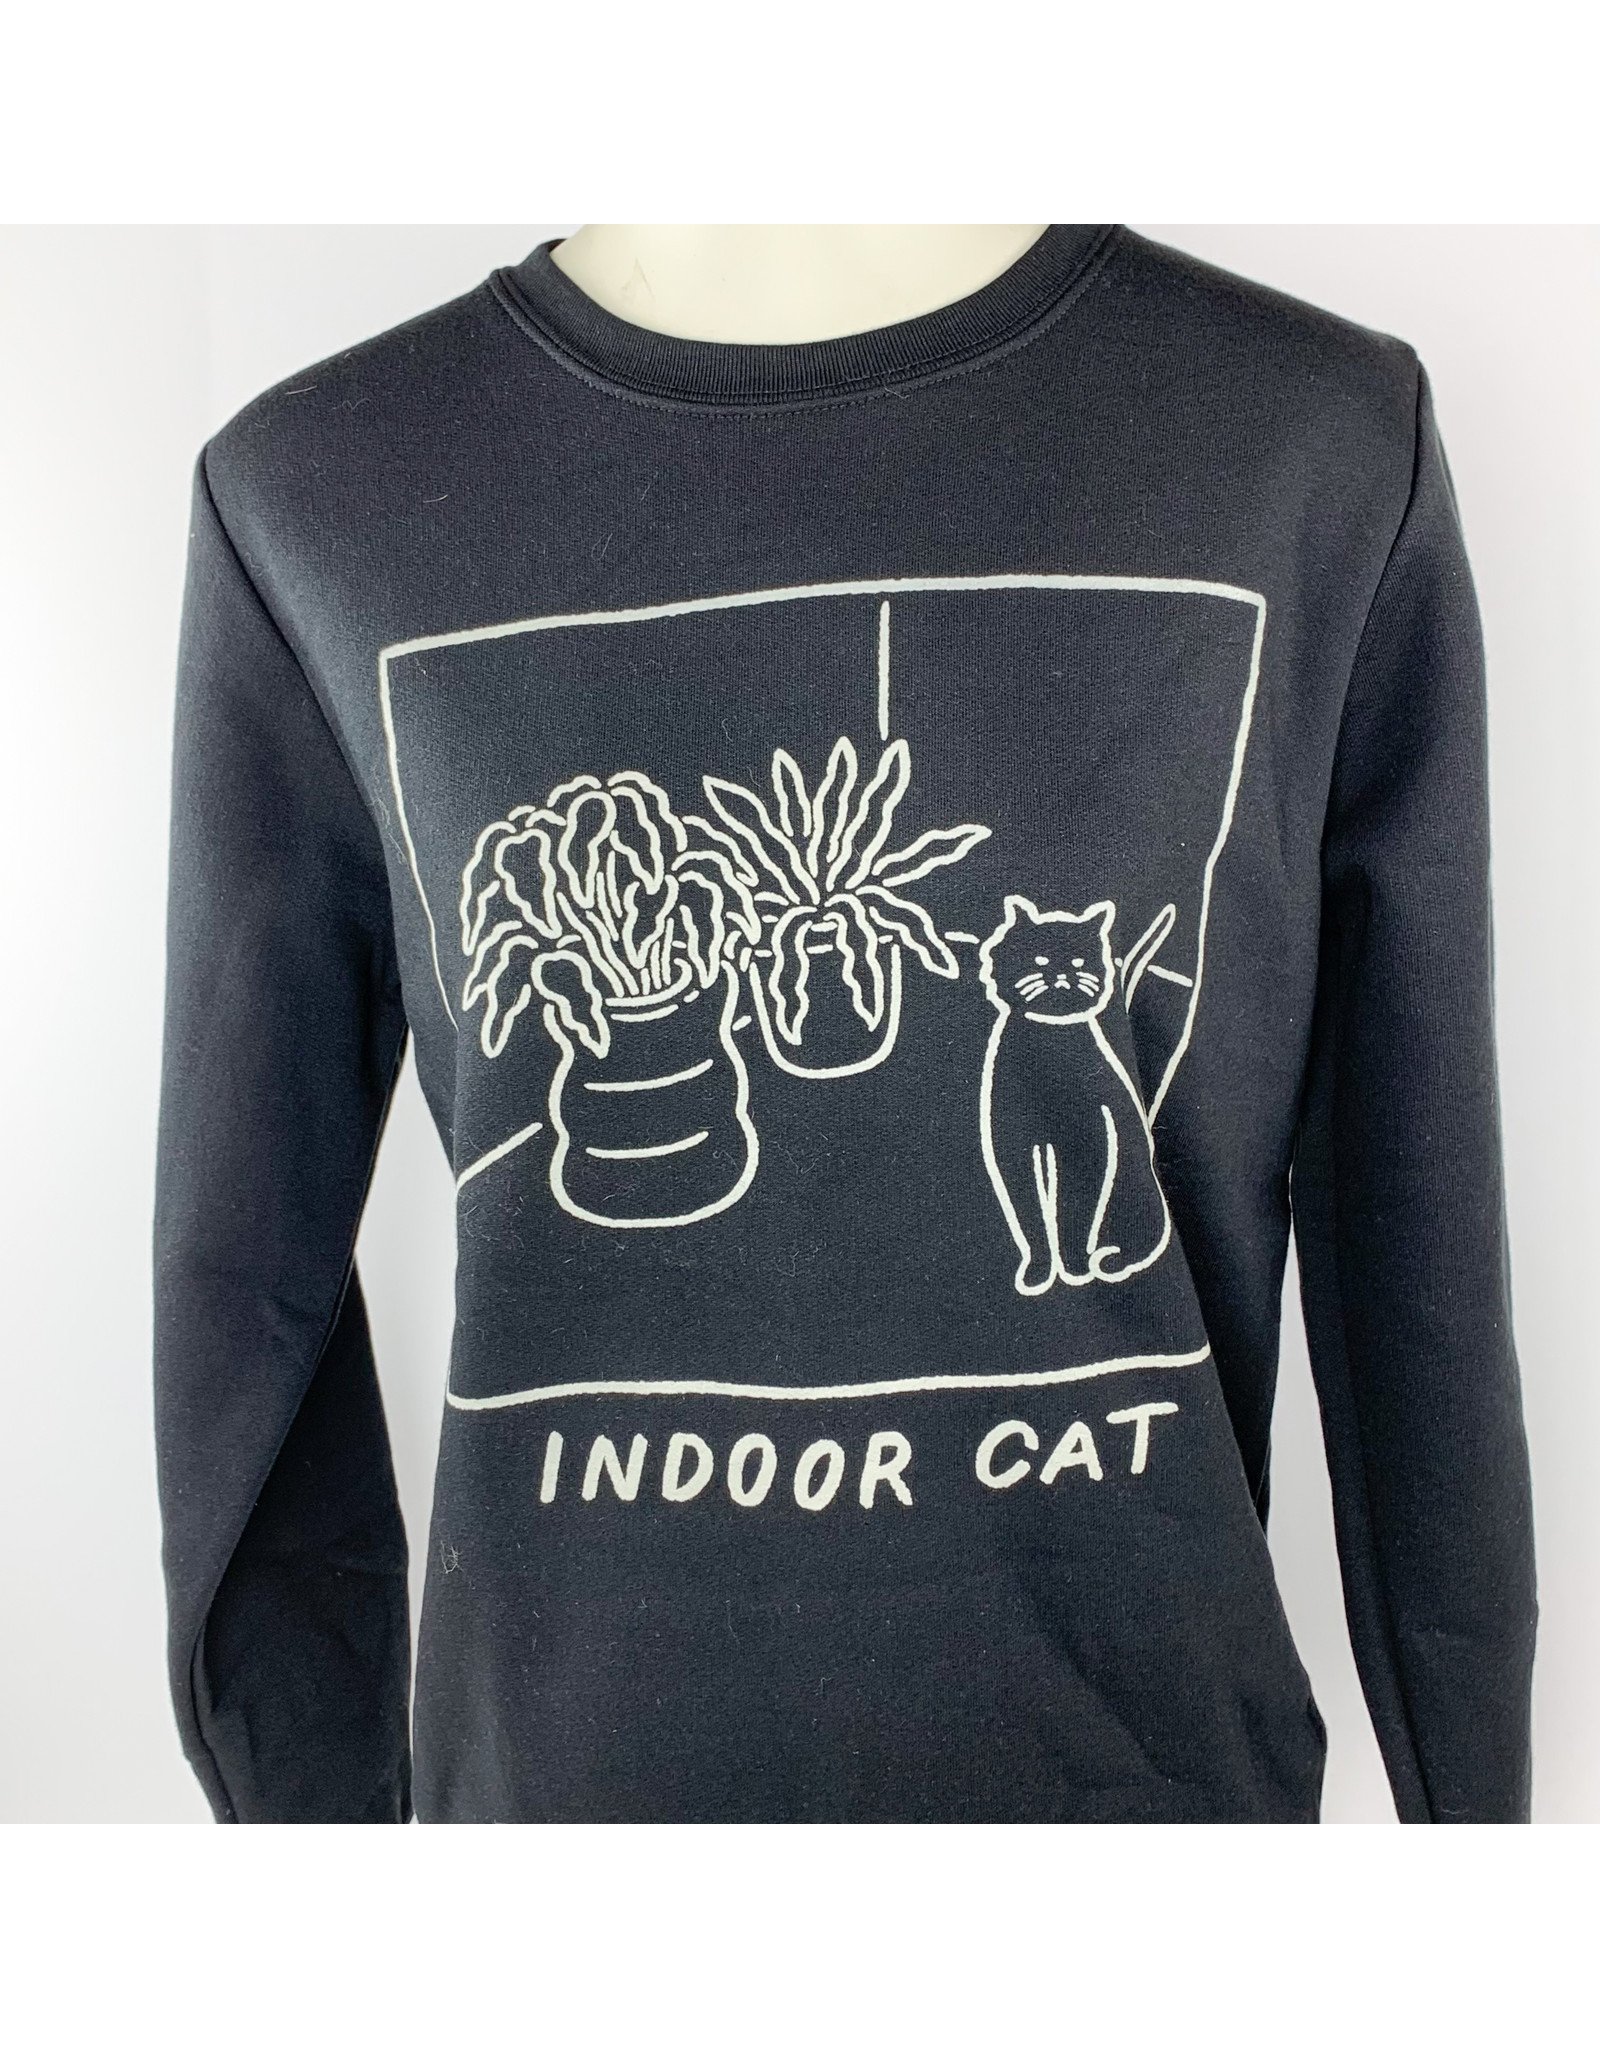 Stay Home Club Indoor Cat Sweatshirt